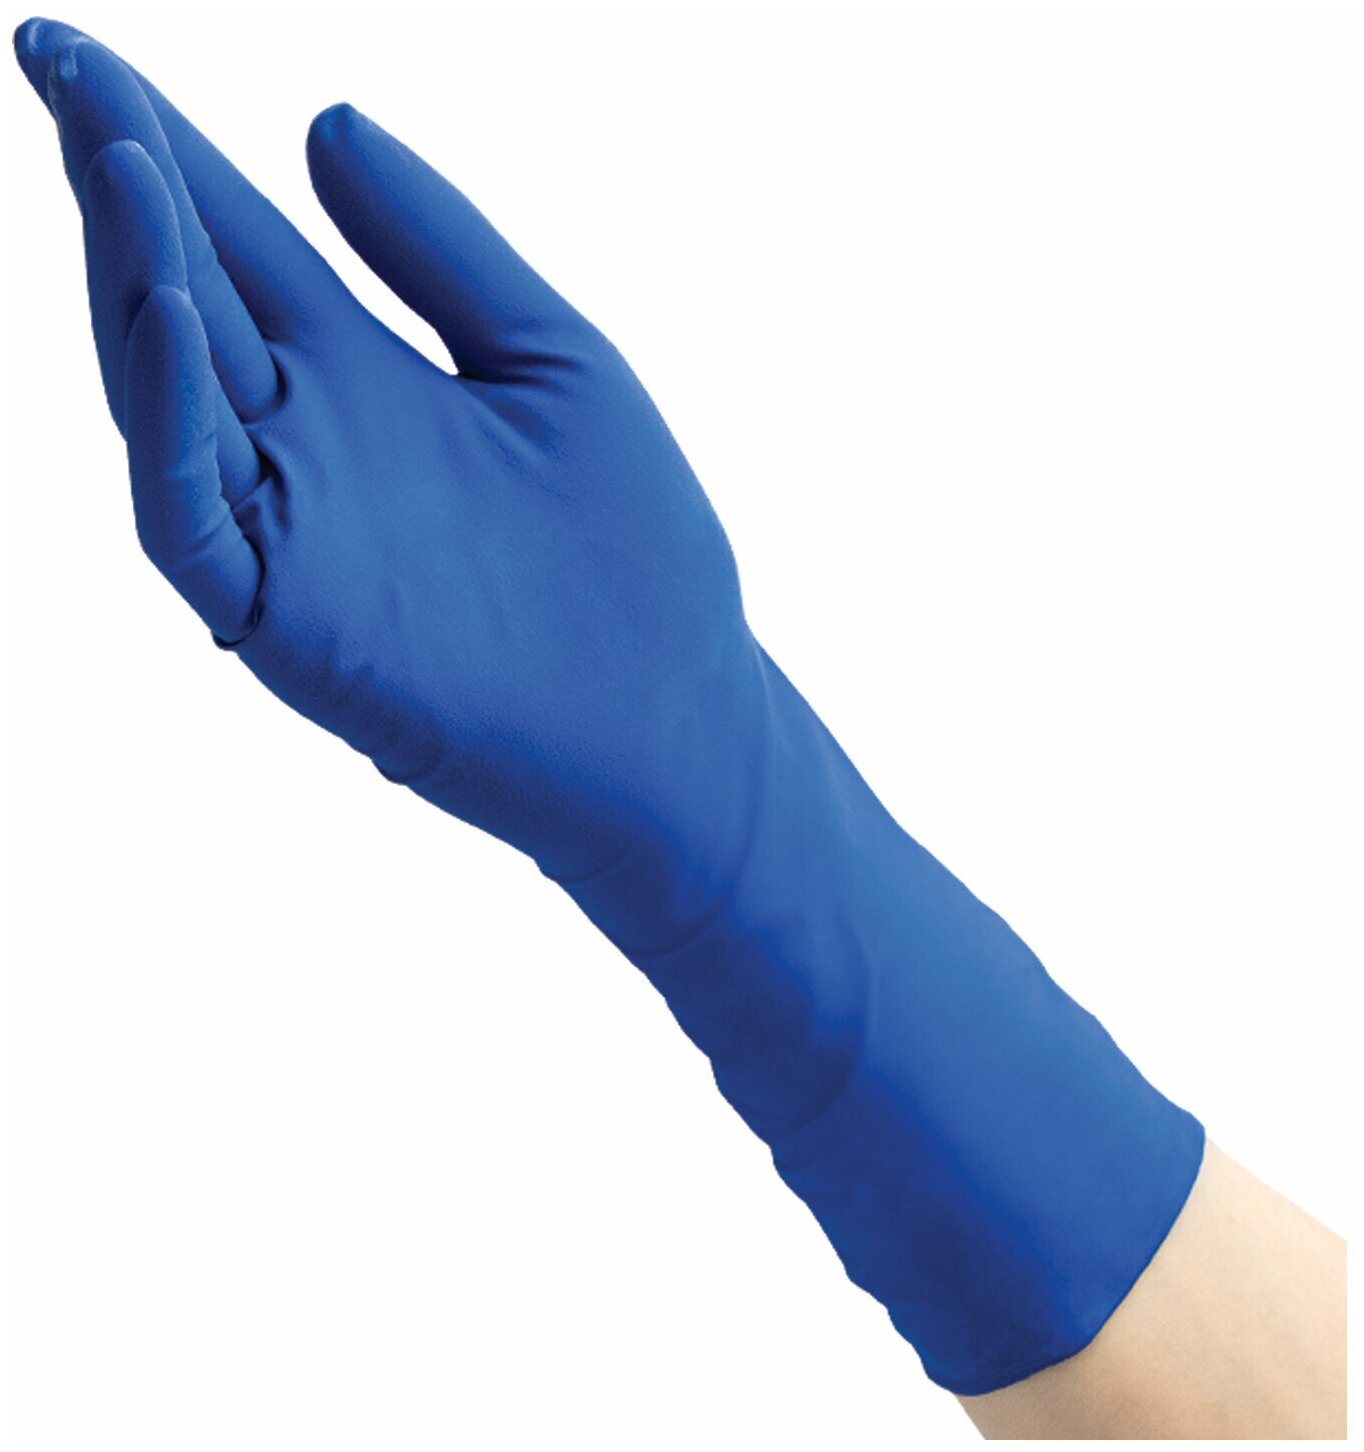 Перчатки диагностические смотровые из натурального латекса нестерильные разм. M 50 шт. Top Glove Sdn Bhd - фото №11